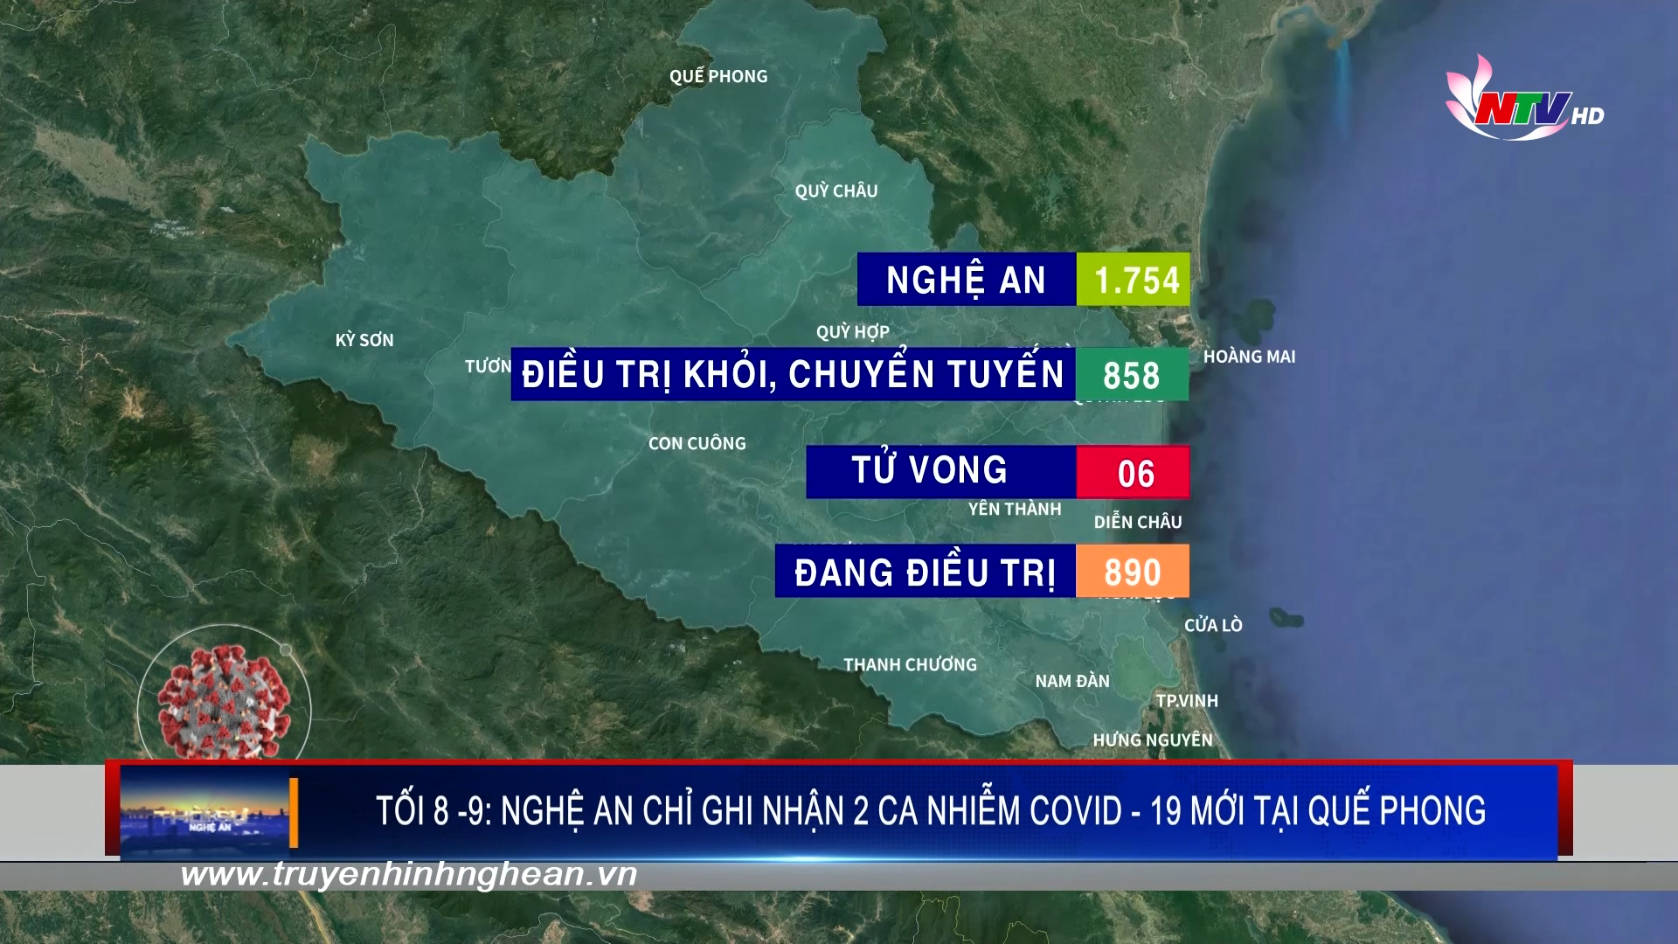 Tối 8 -9: Nghệ An có thêm 2 ca nhiễm Covid-19 mới